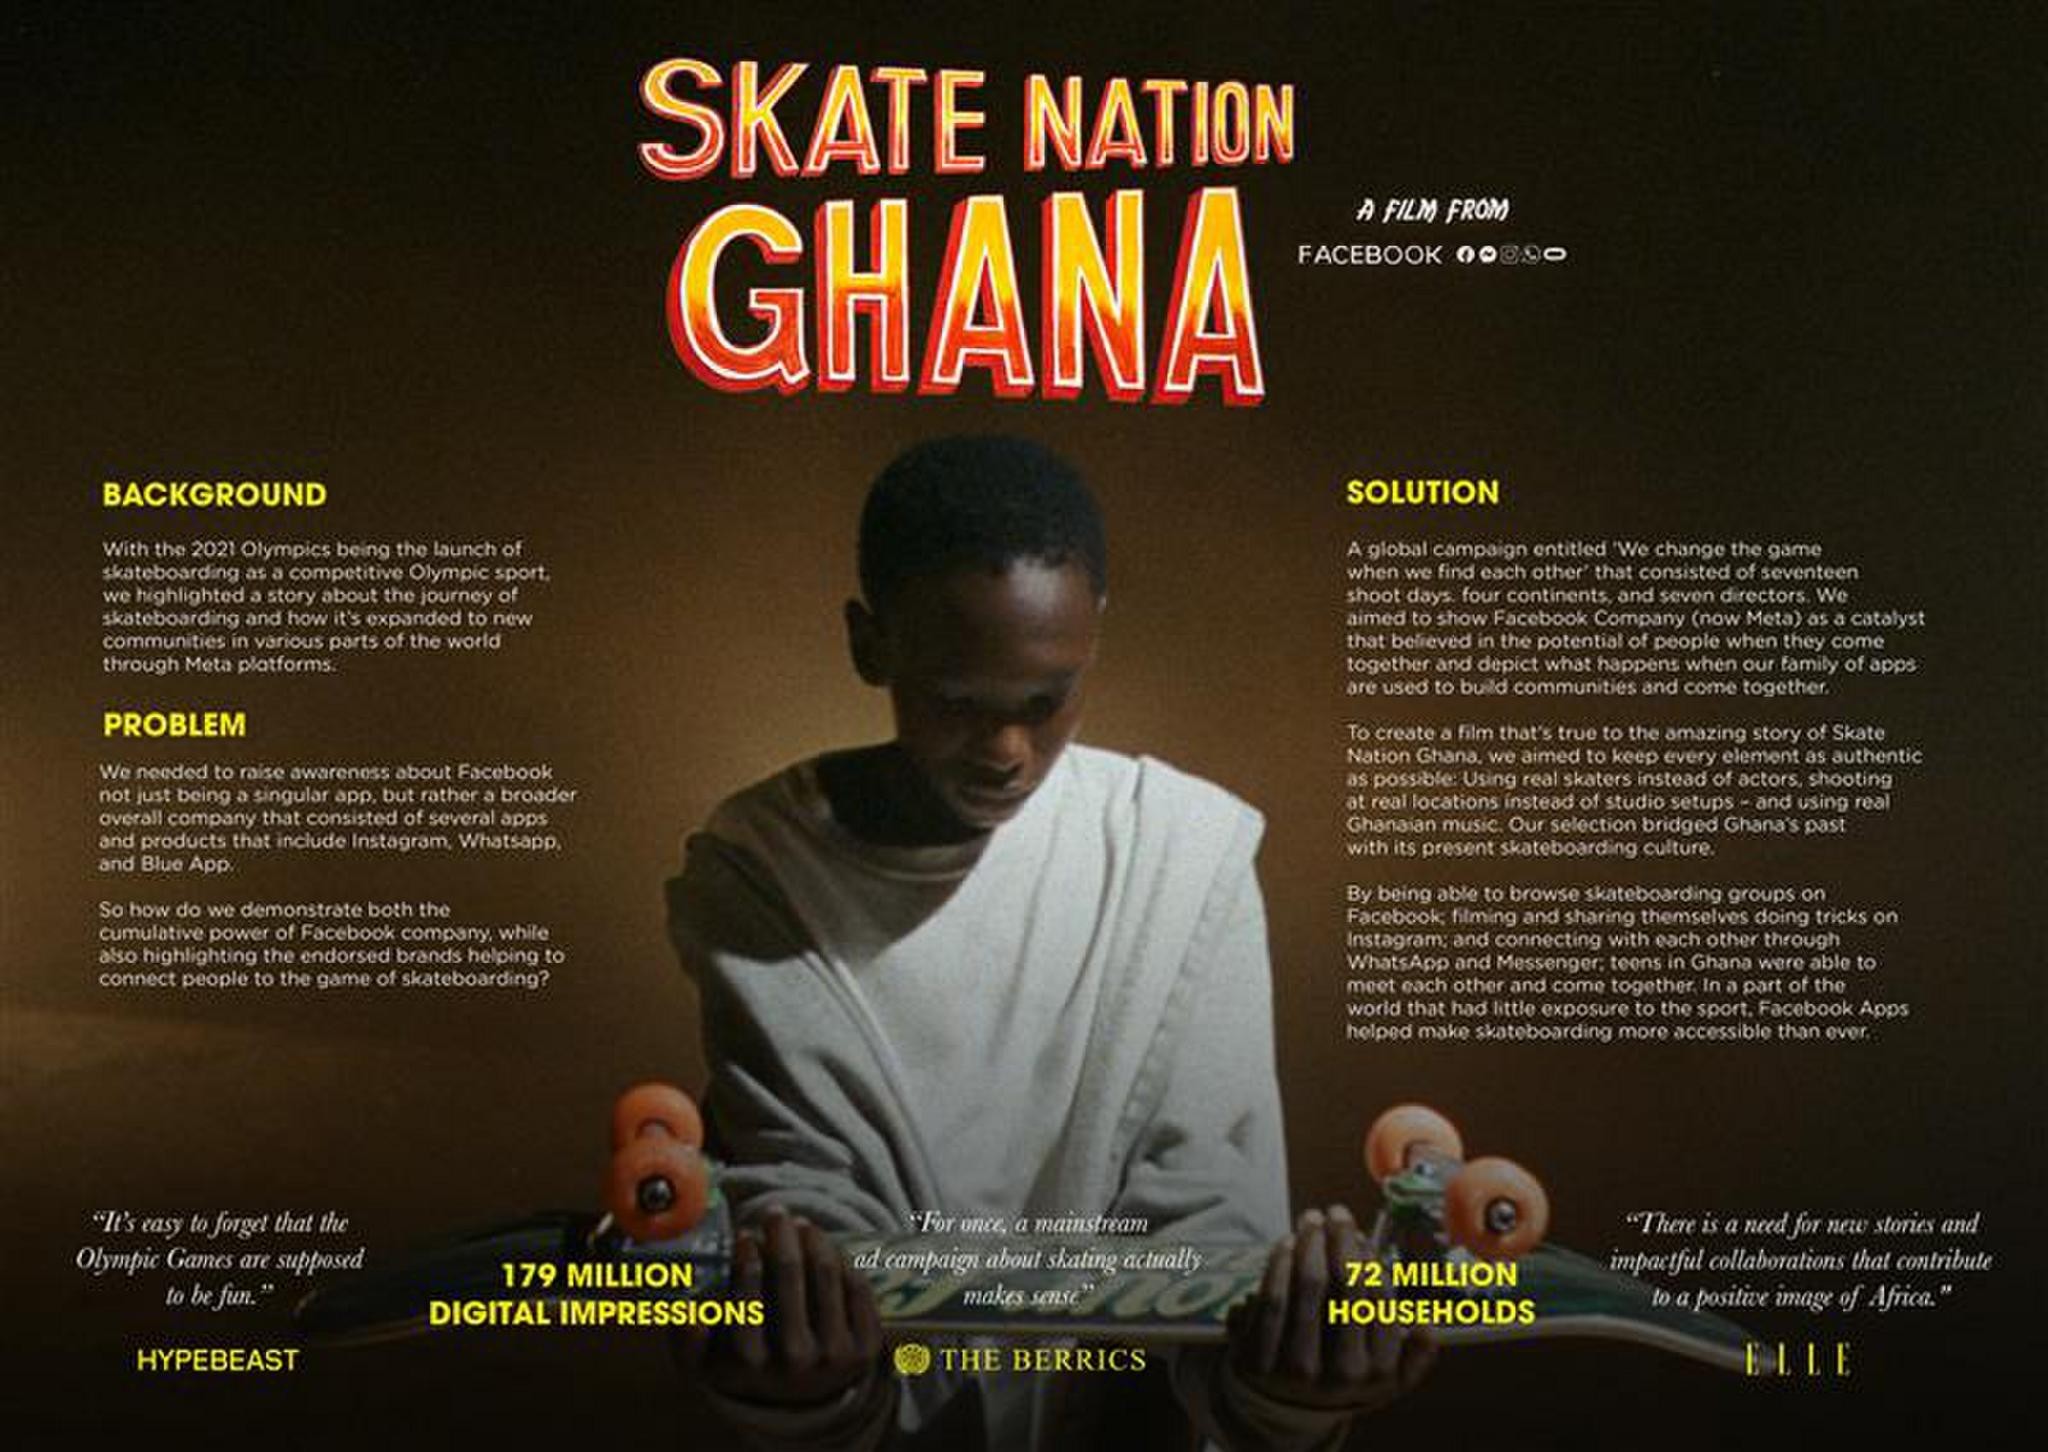 Skate Nation Ghana